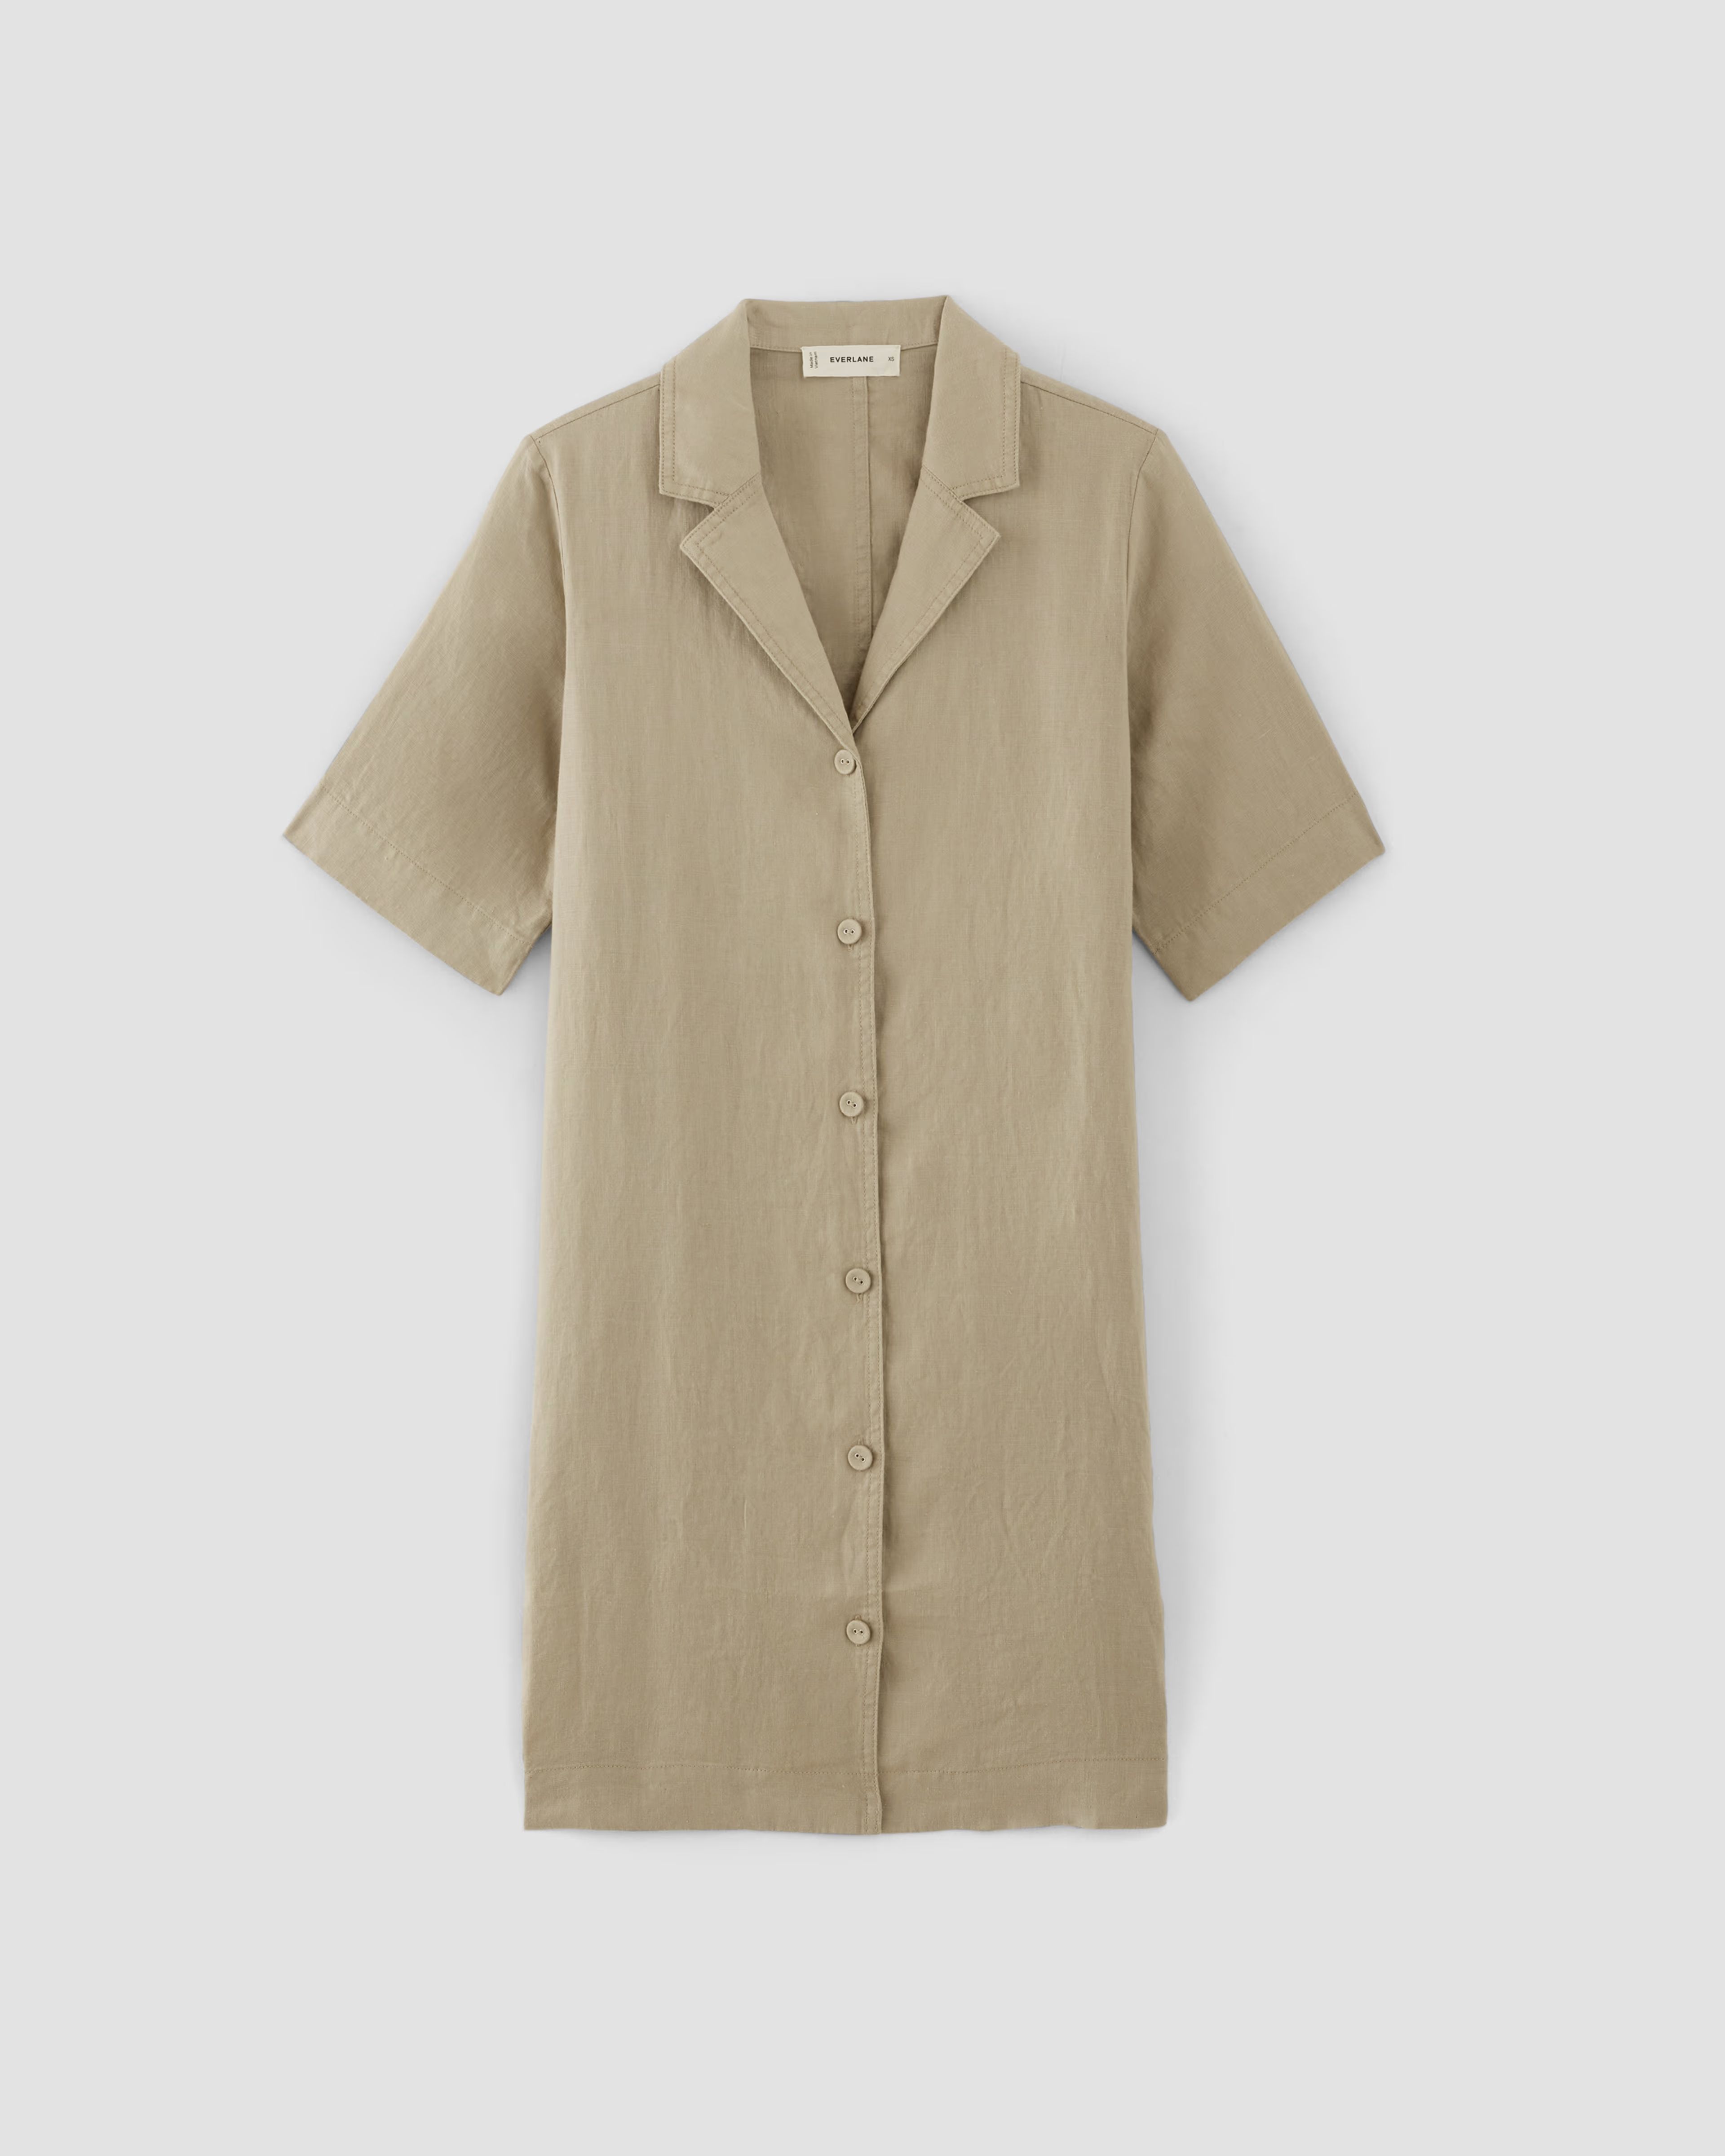 The Linen Shirt Dress | Everlane